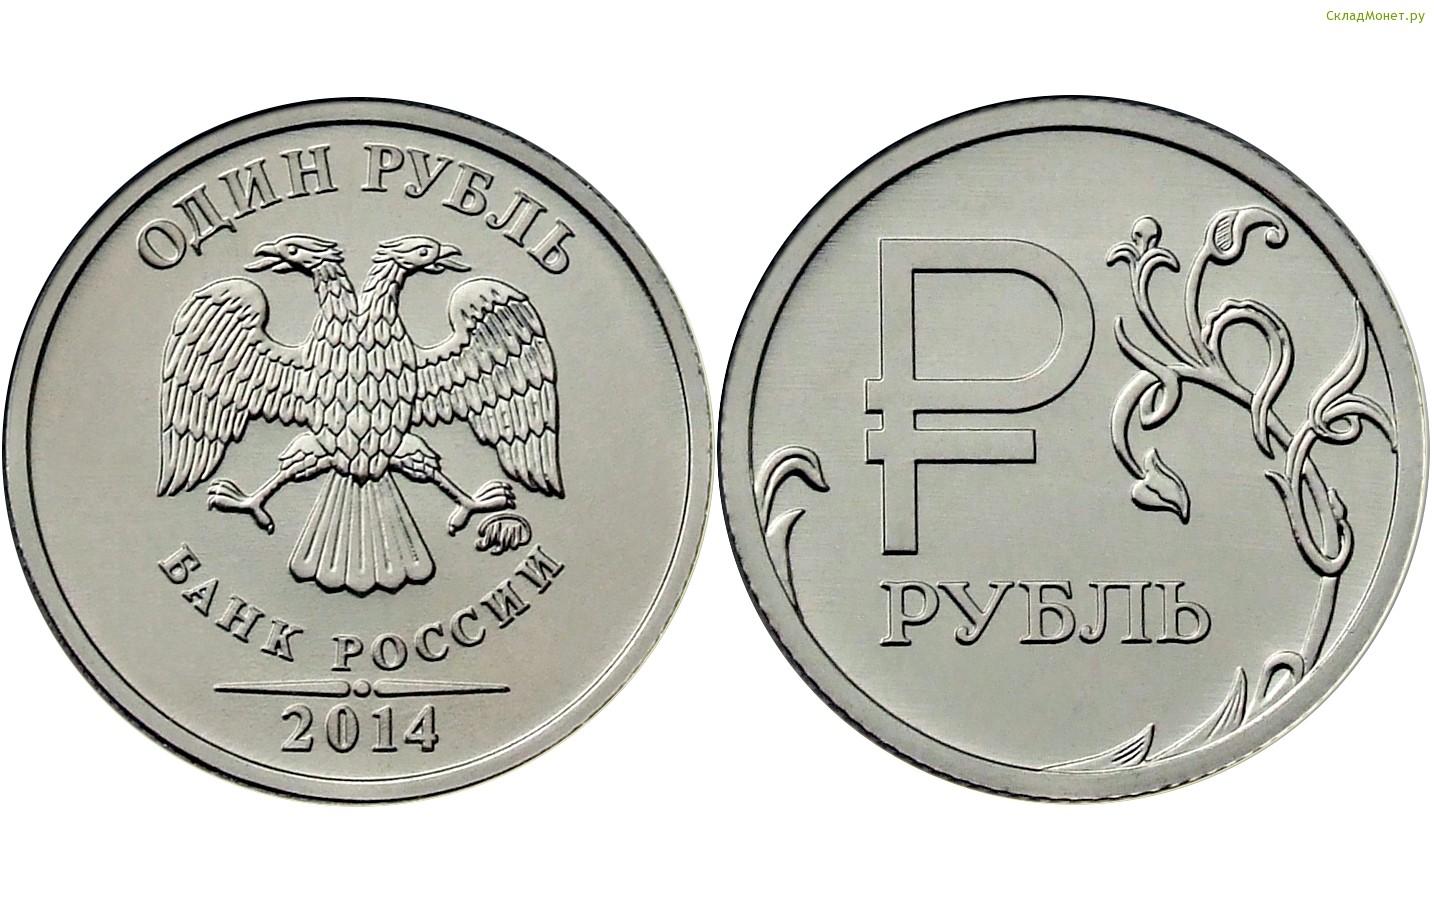 1 рубль 2014 года "Графический знак рубля Российской Федерации"